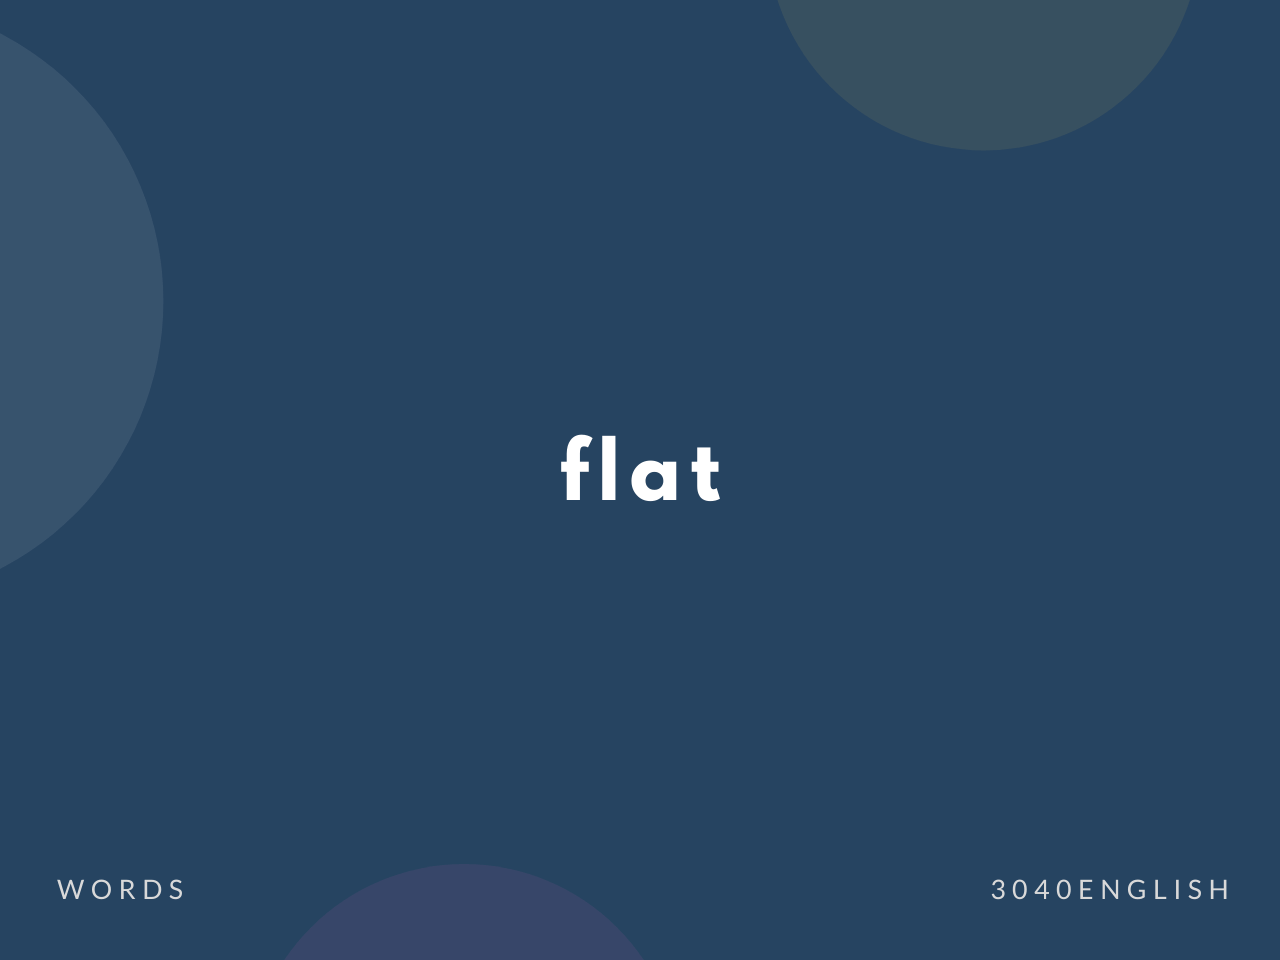 フラット Flat の意味と簡単な使い方 英語表現 例文あり 30代40代で身につける英会話